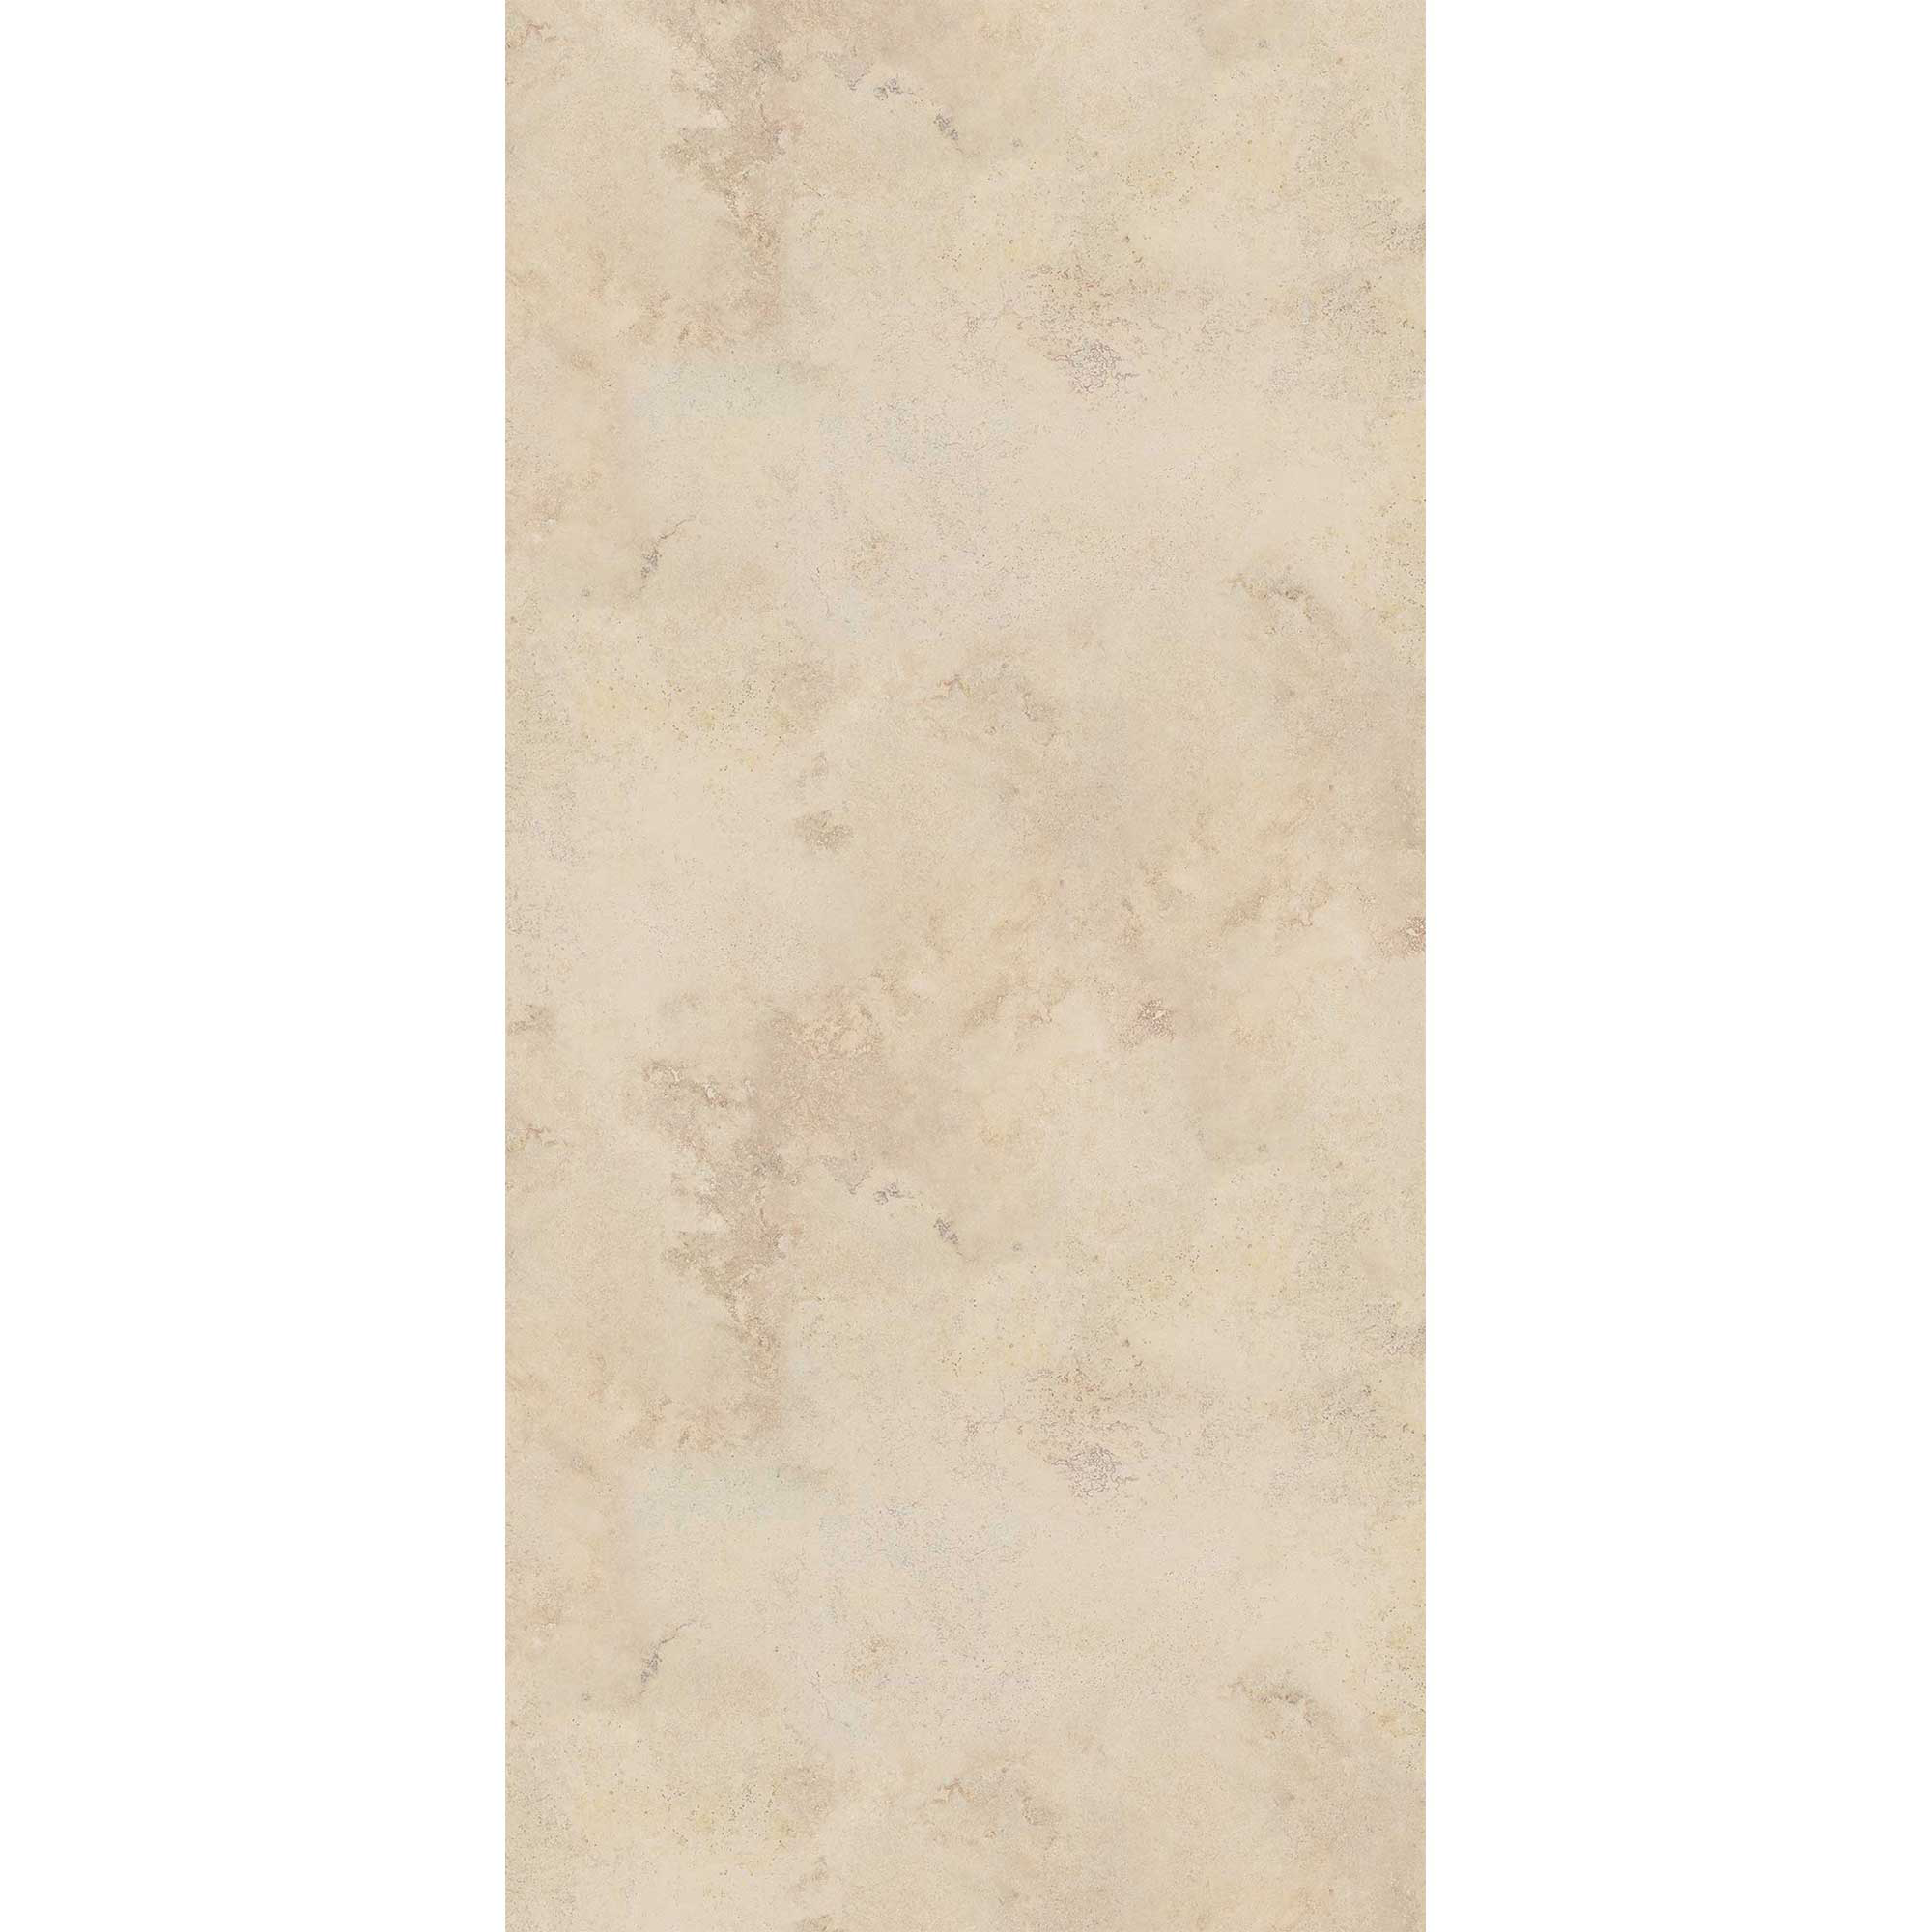 Duschrückwand hochglanz Sandsteinoptik beige 100 x 255 cm + product picture